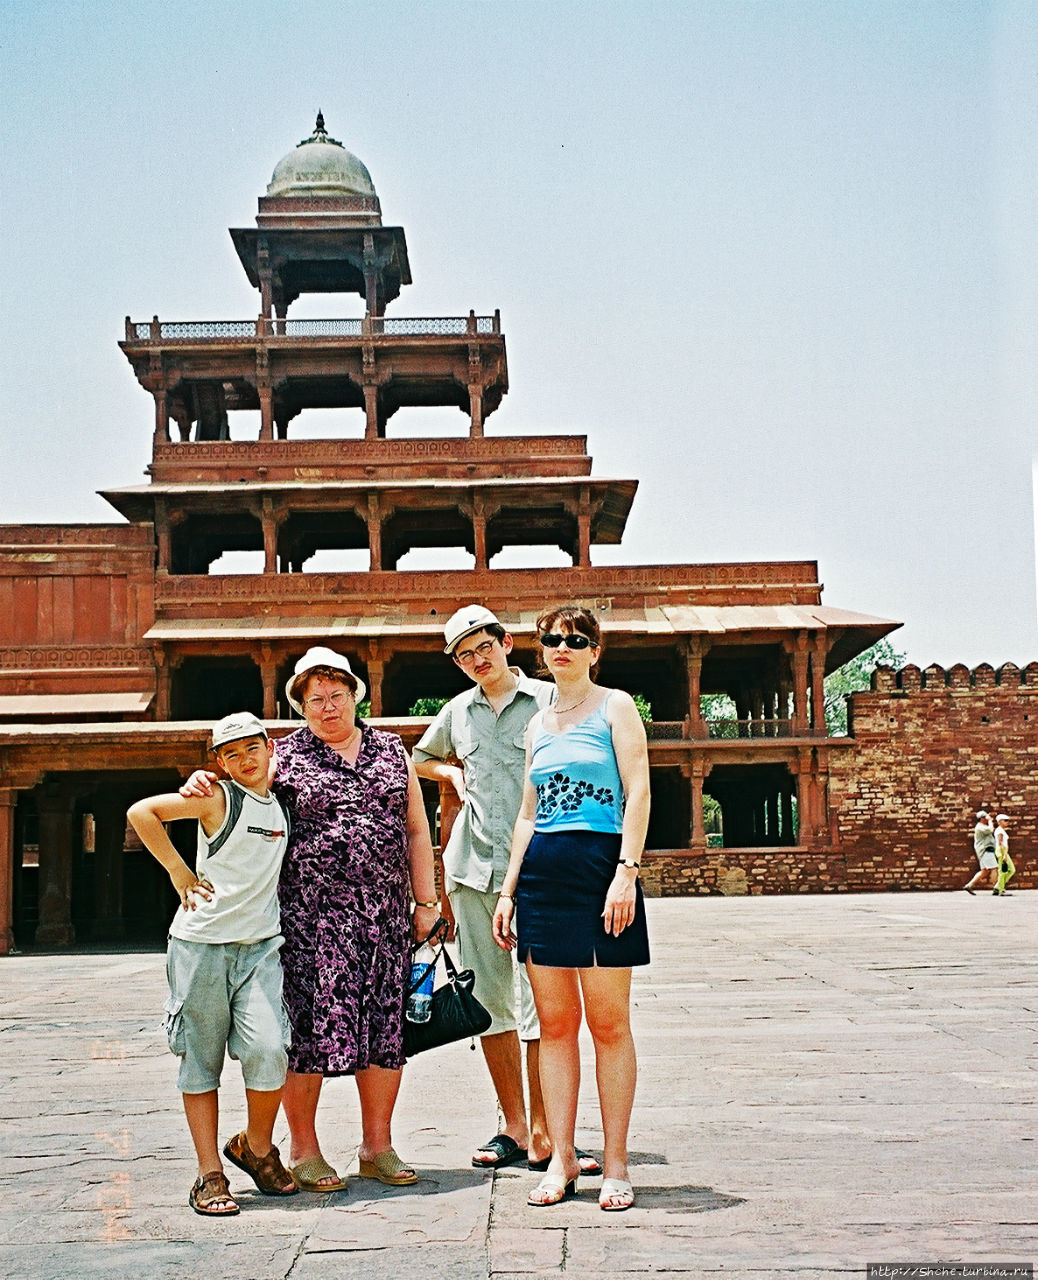 Дворец Панч-Махал Фатехпур-Сикри, Индия